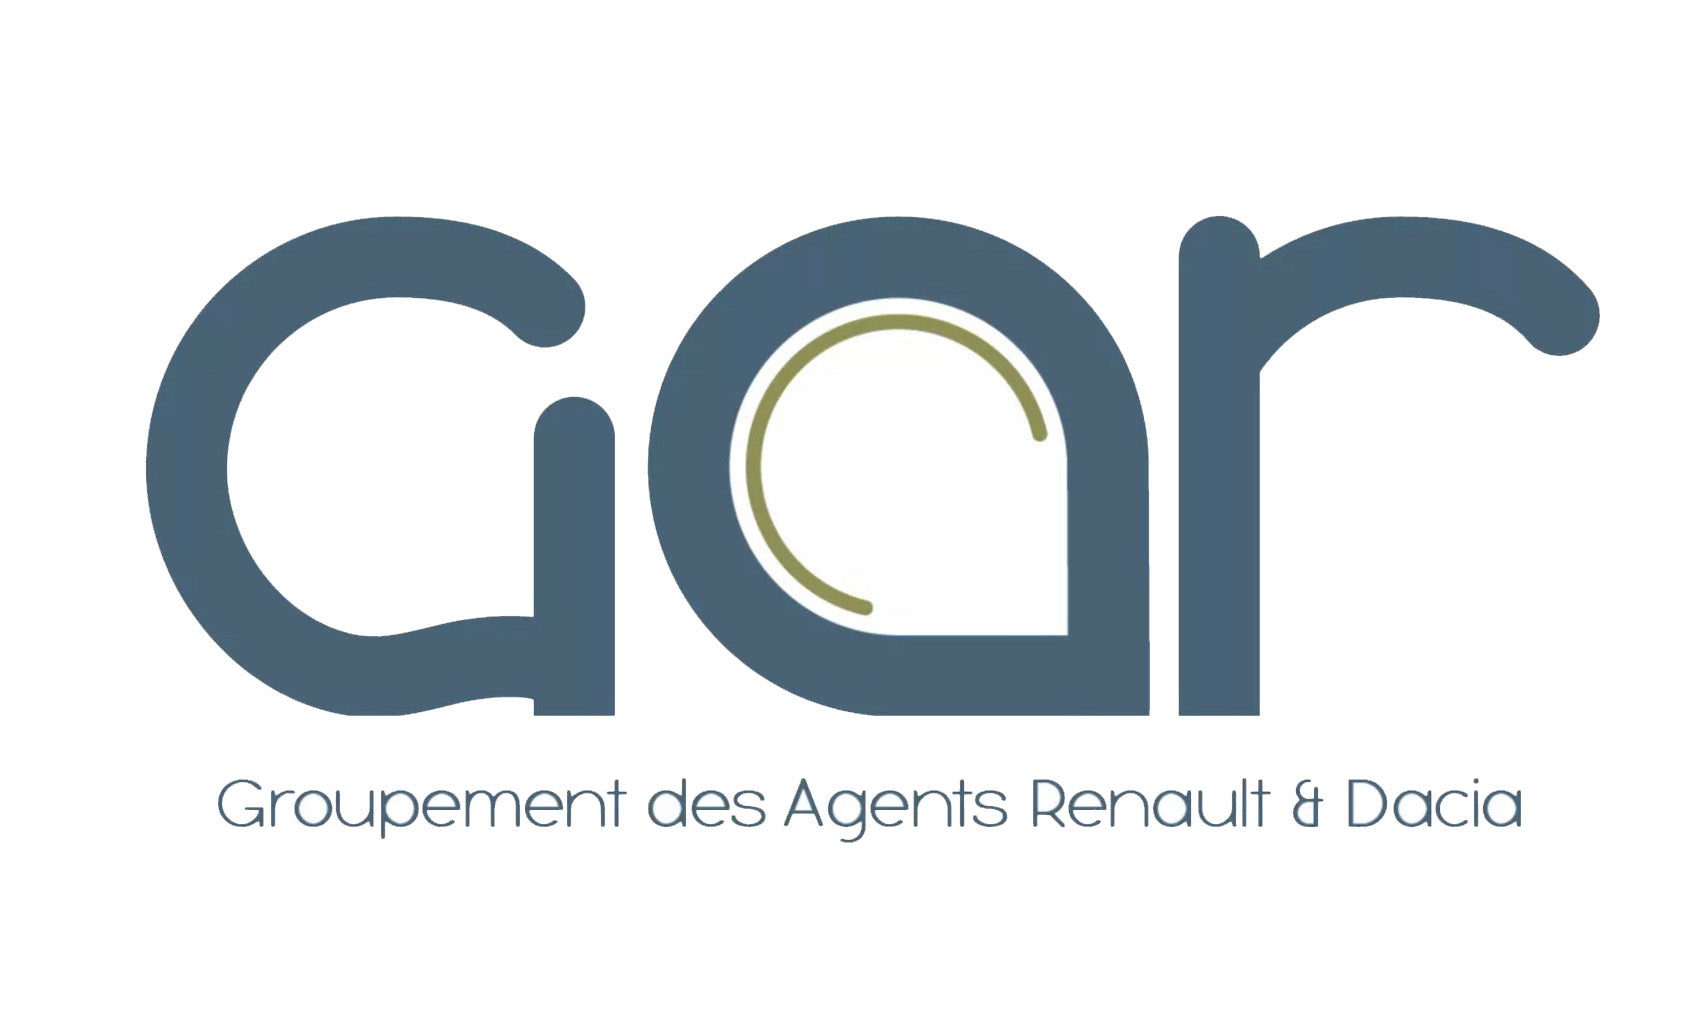 Sp tools nouveau partenaire GAR (Groupement des Agents Renault et Dacia)